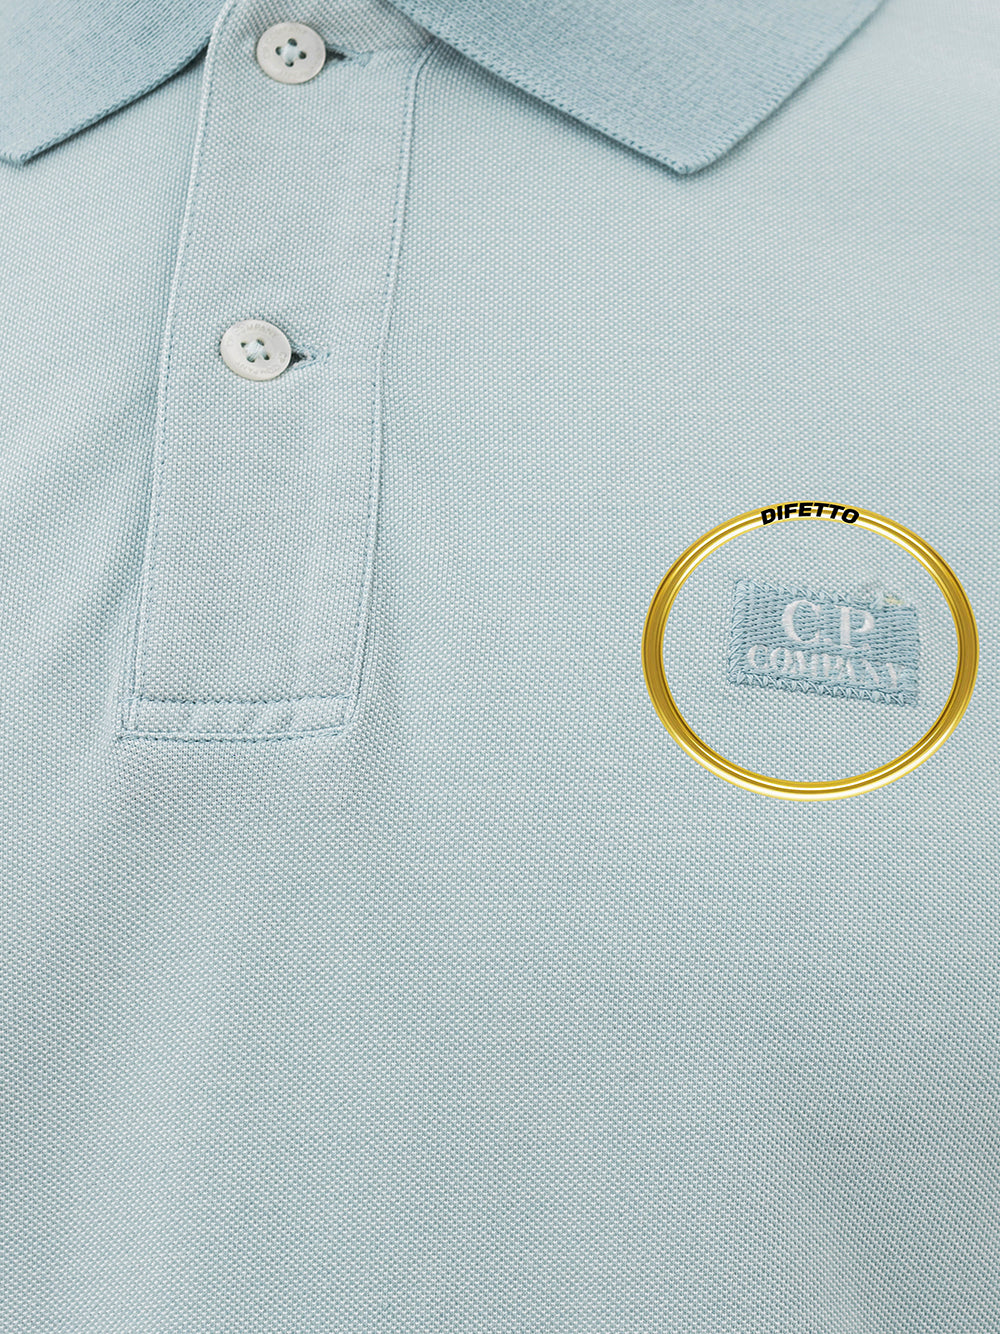 Piquet polo shirt with CP Company logo